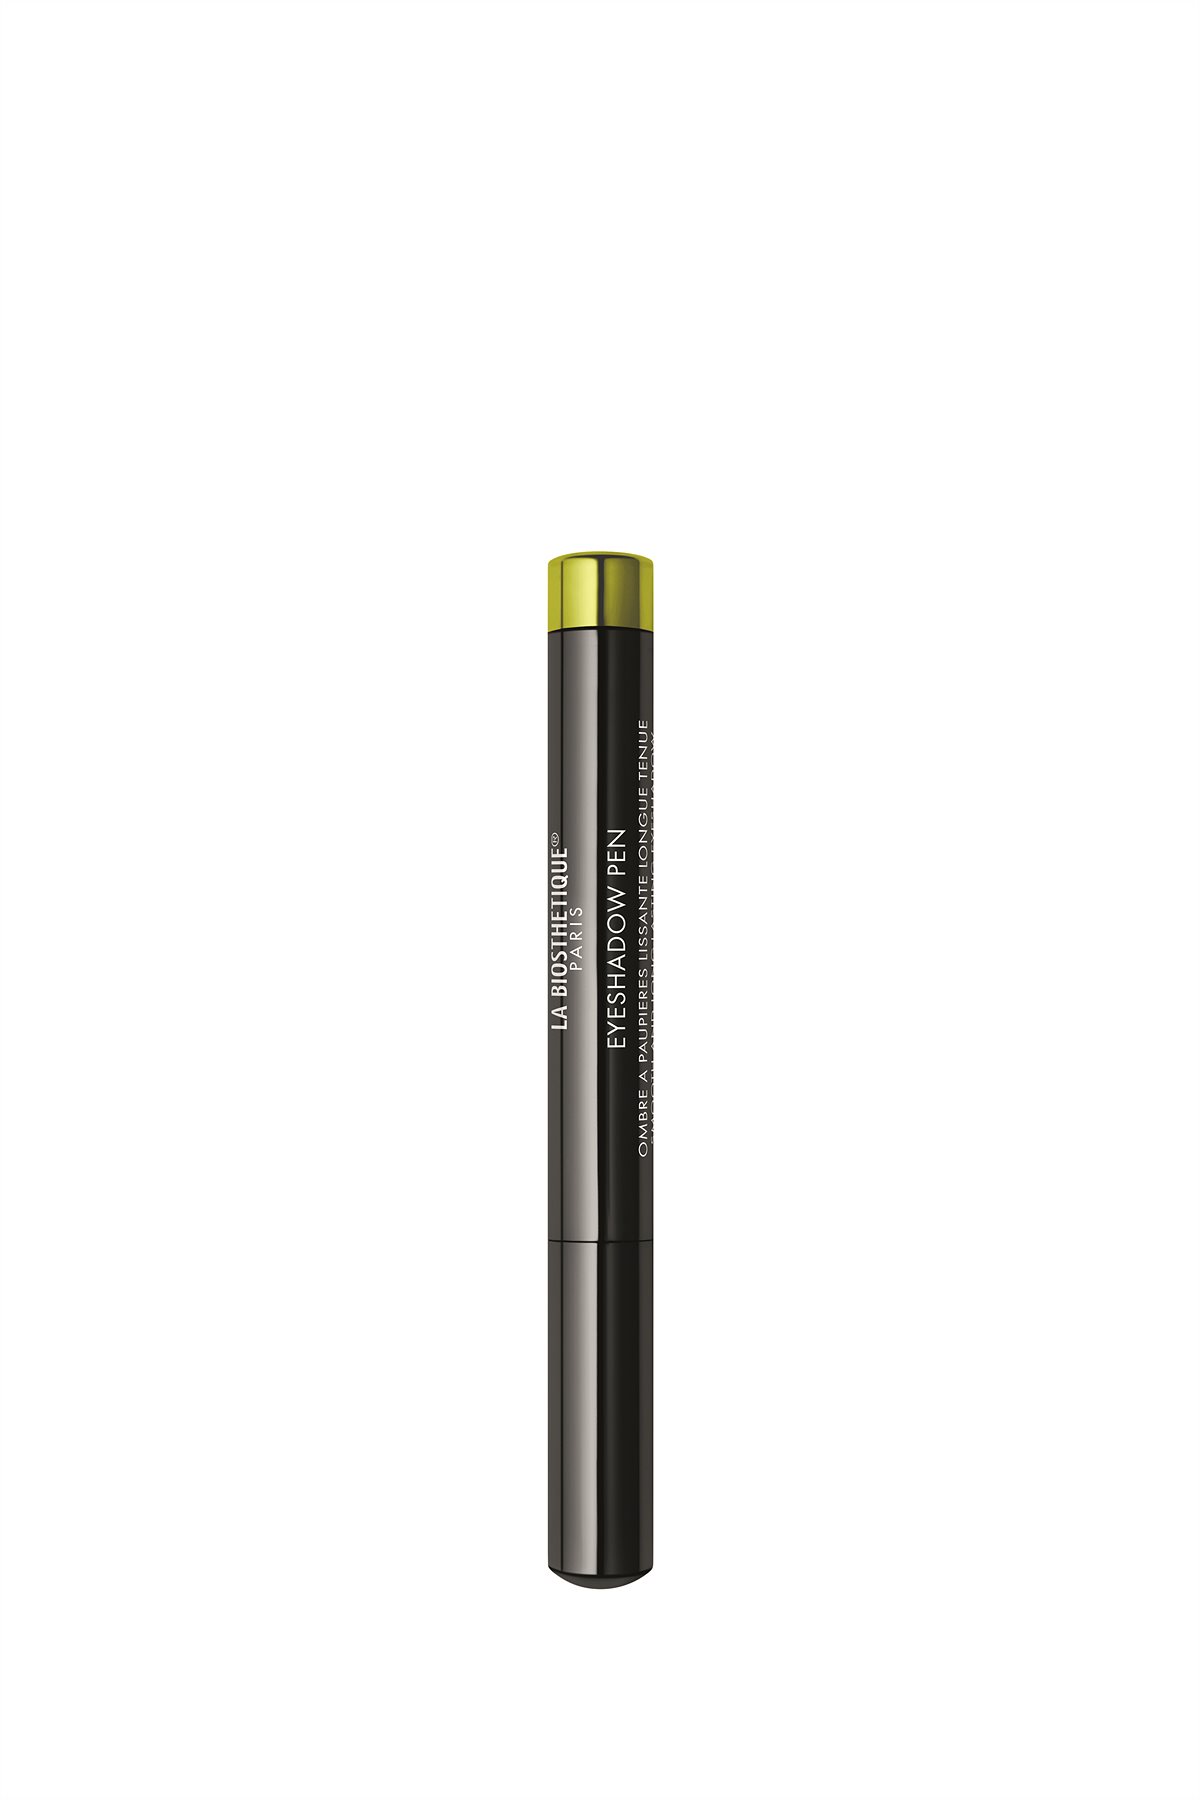 La Biosthétique_Eyeshadow Pen in Lime_EUR 20,-